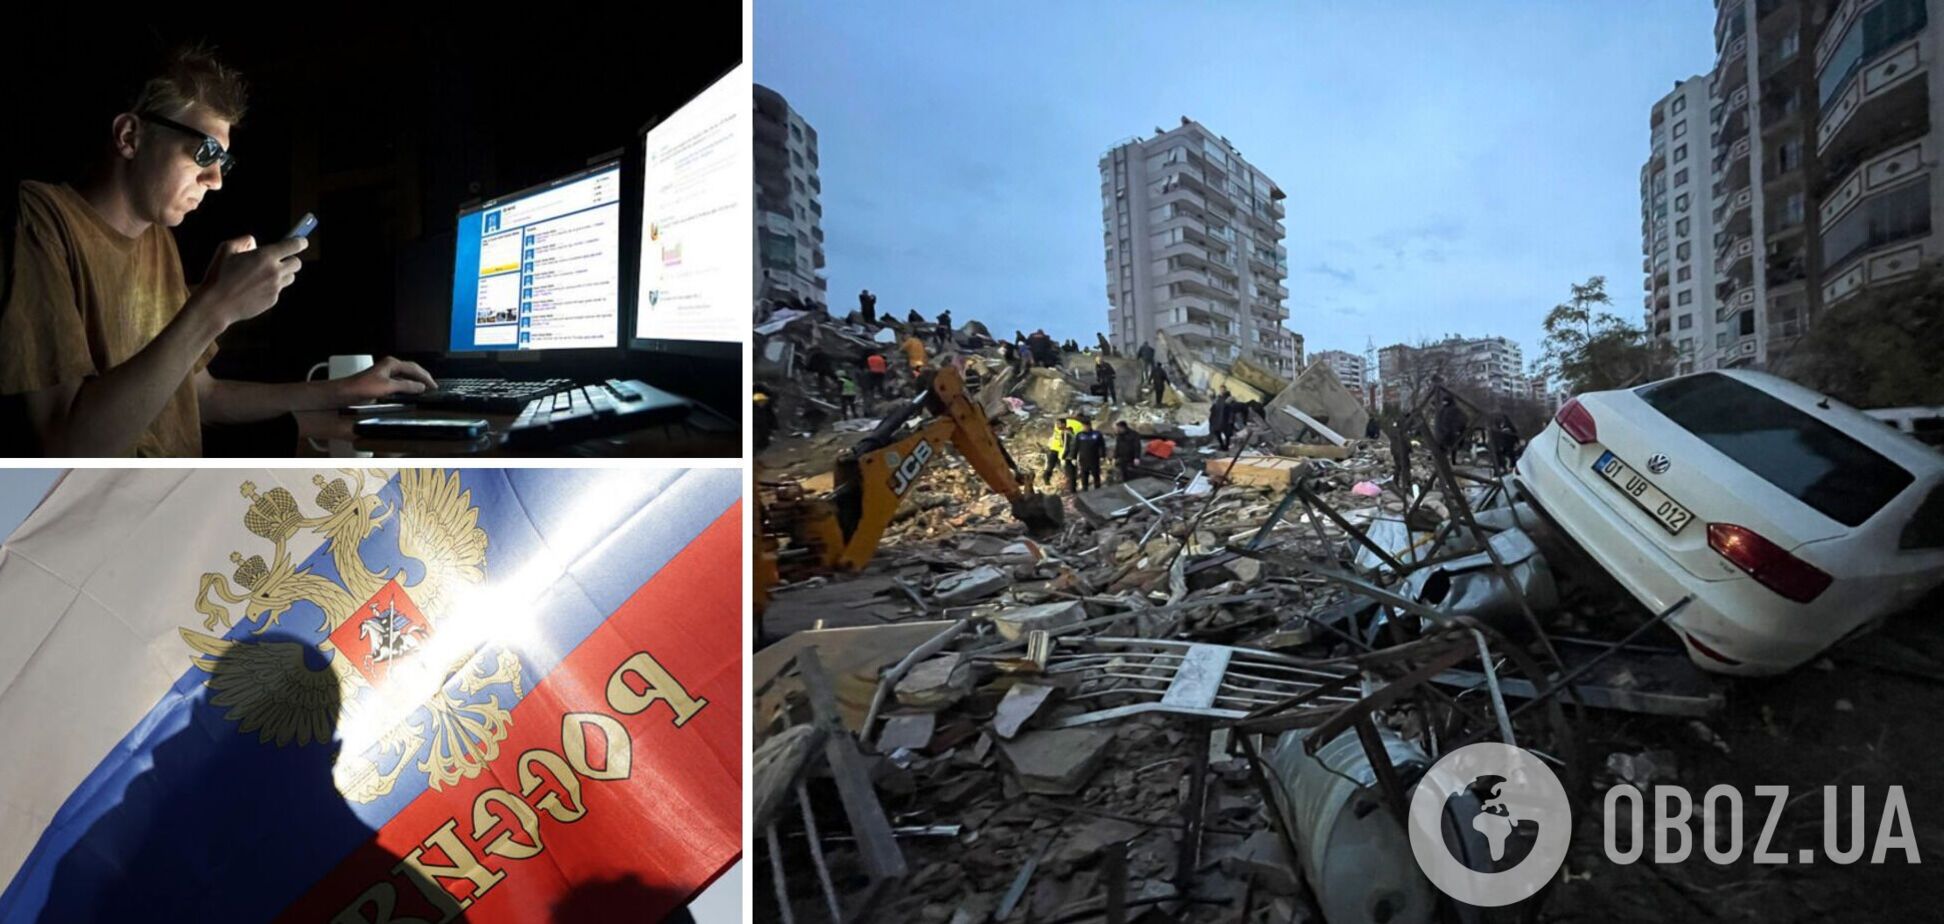 'За 'Байрактари' для України': росіяни зраділи обвалам будинків у Туреччині, внаслідок яких загинули люди